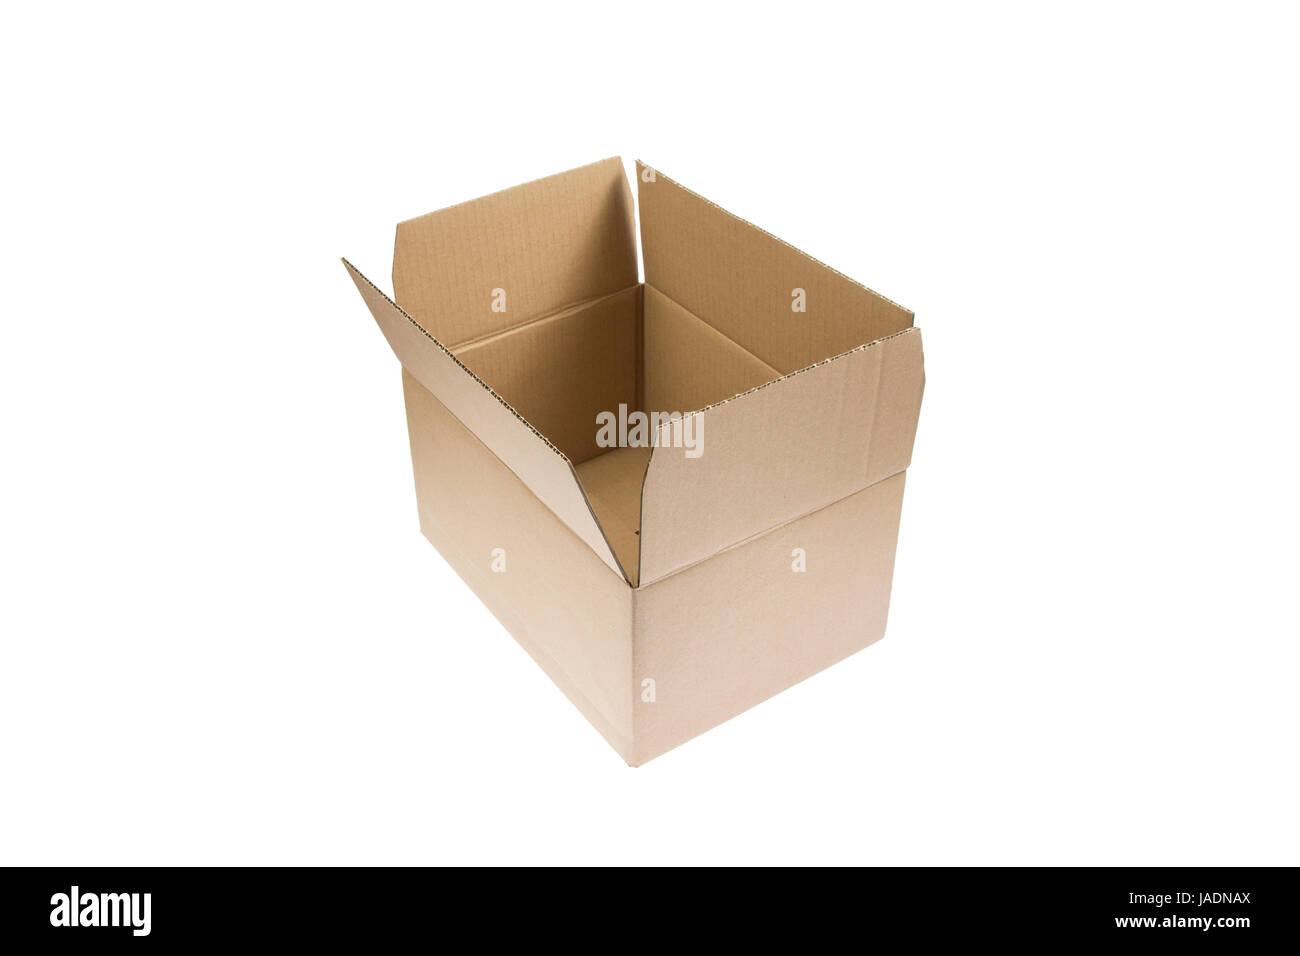 Geöffnetes Paket freigestellt auf weißem Hintergrund - An opened empty Parcel isolated on white Background Stock Photo